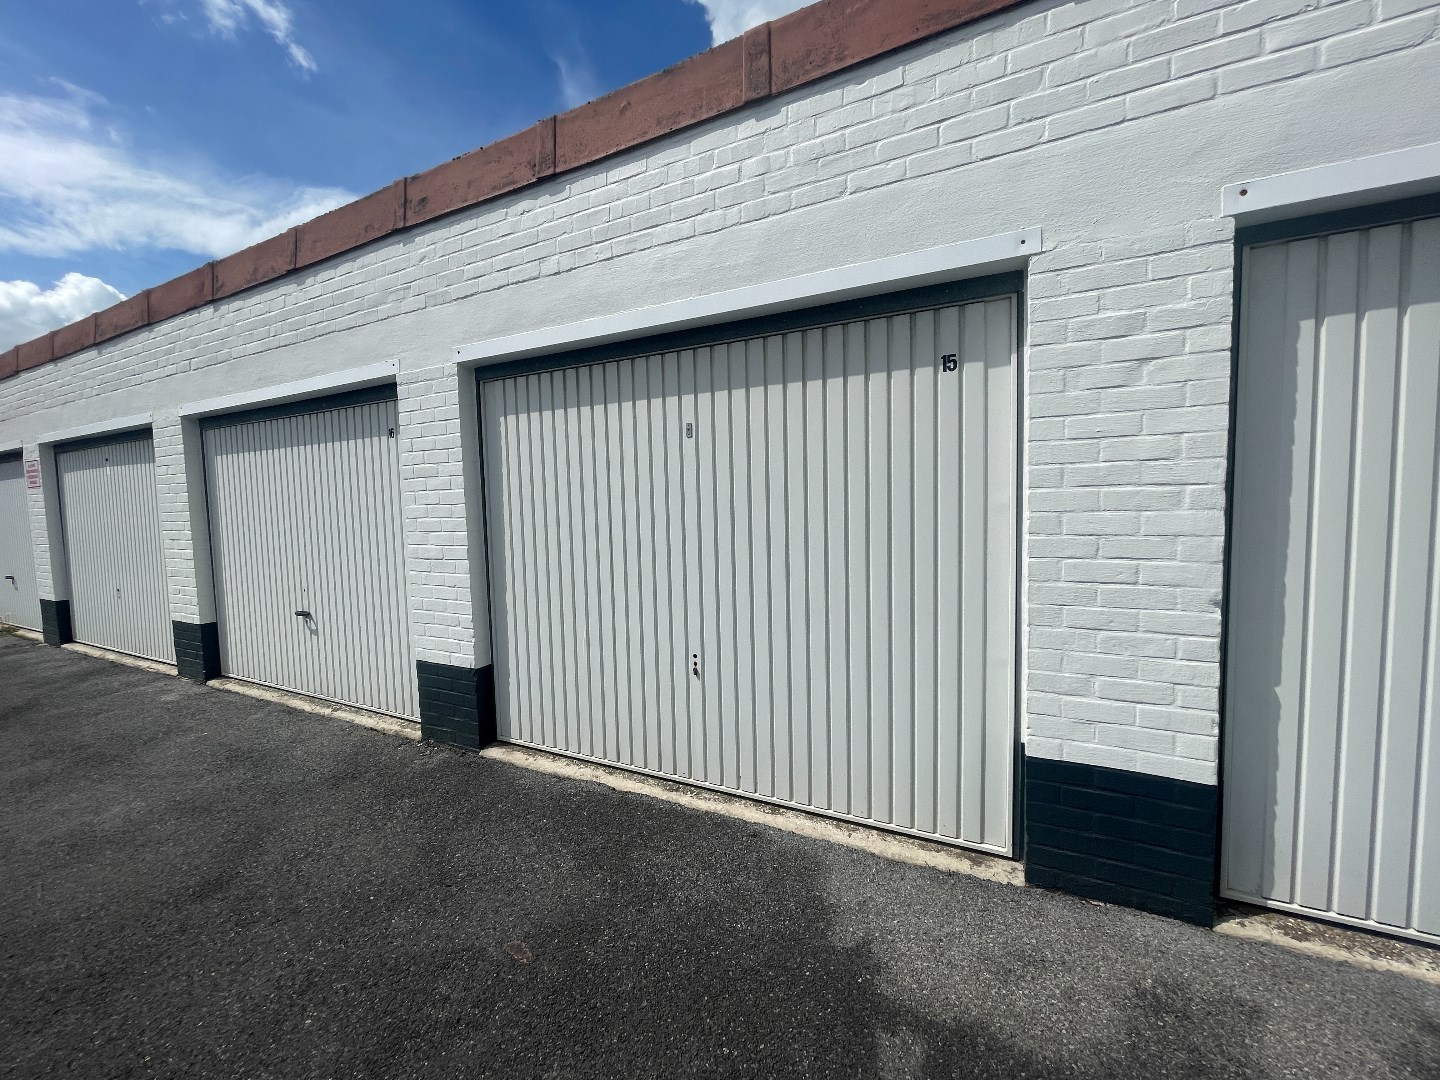 1 afgesloten gemetste garage met elektriciteit en sectionale poort te Roeselare  foto 2